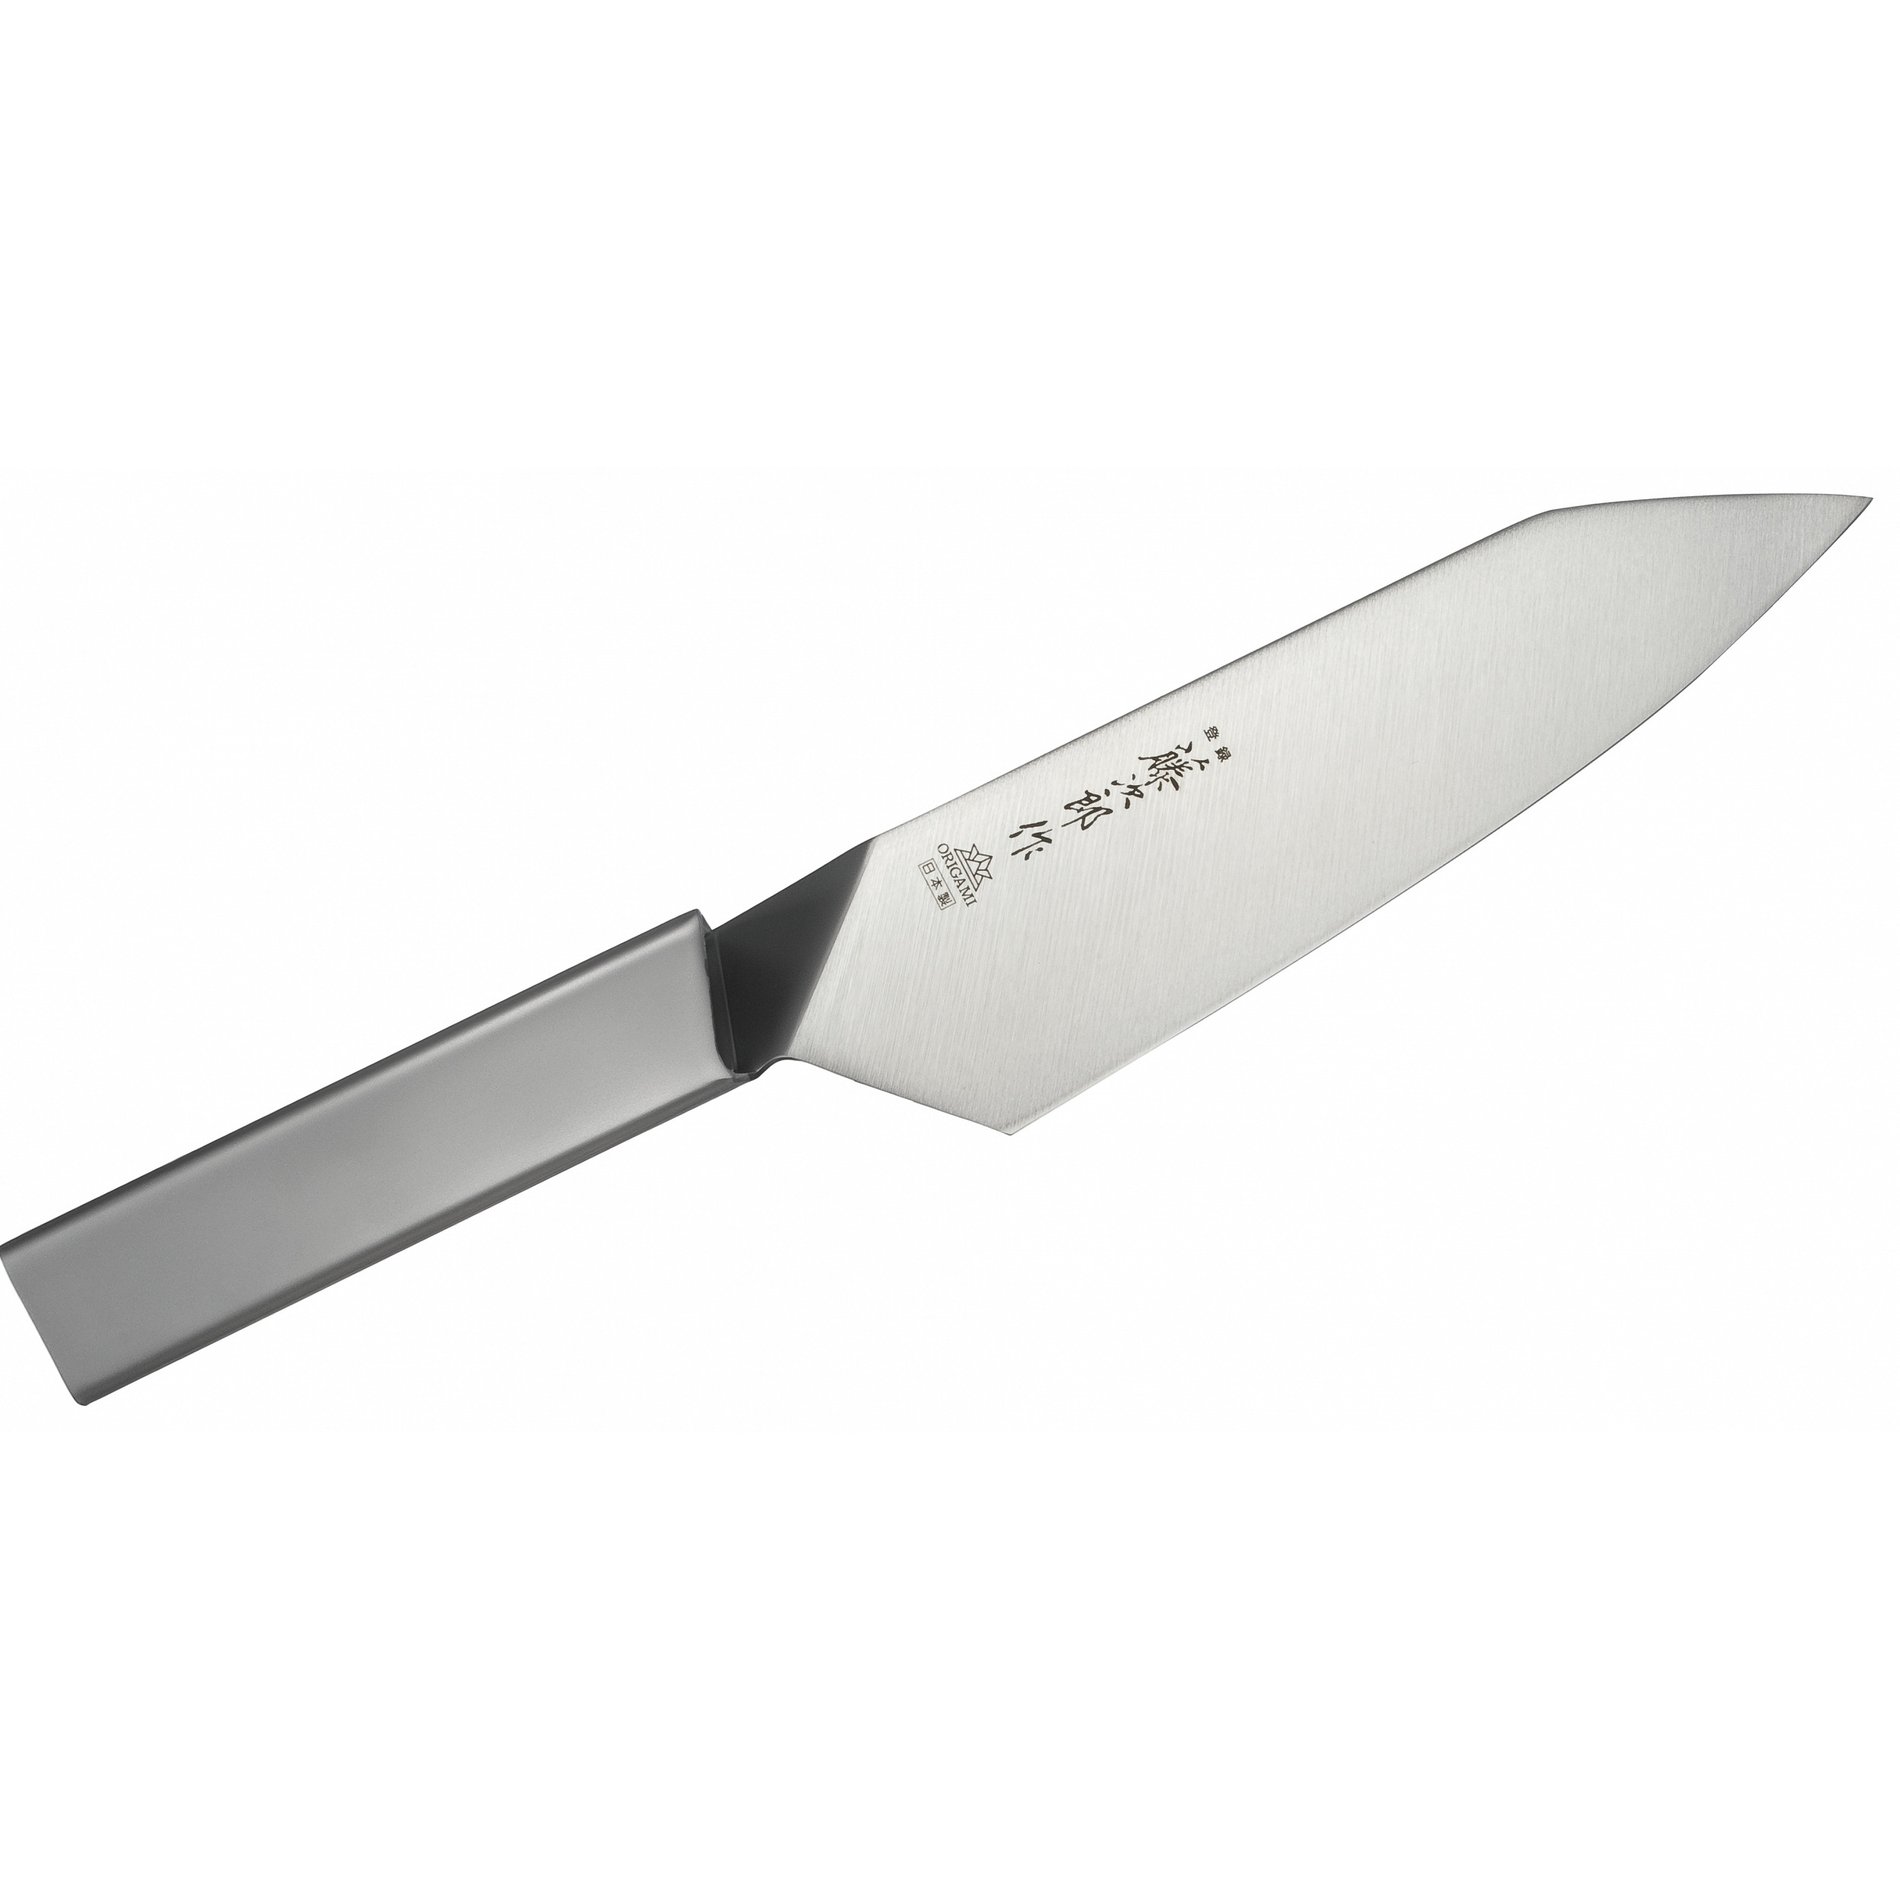 Nůž Santoku z nerezové oceli TOJIRO ORIGAMI BASIC 16,5 cm